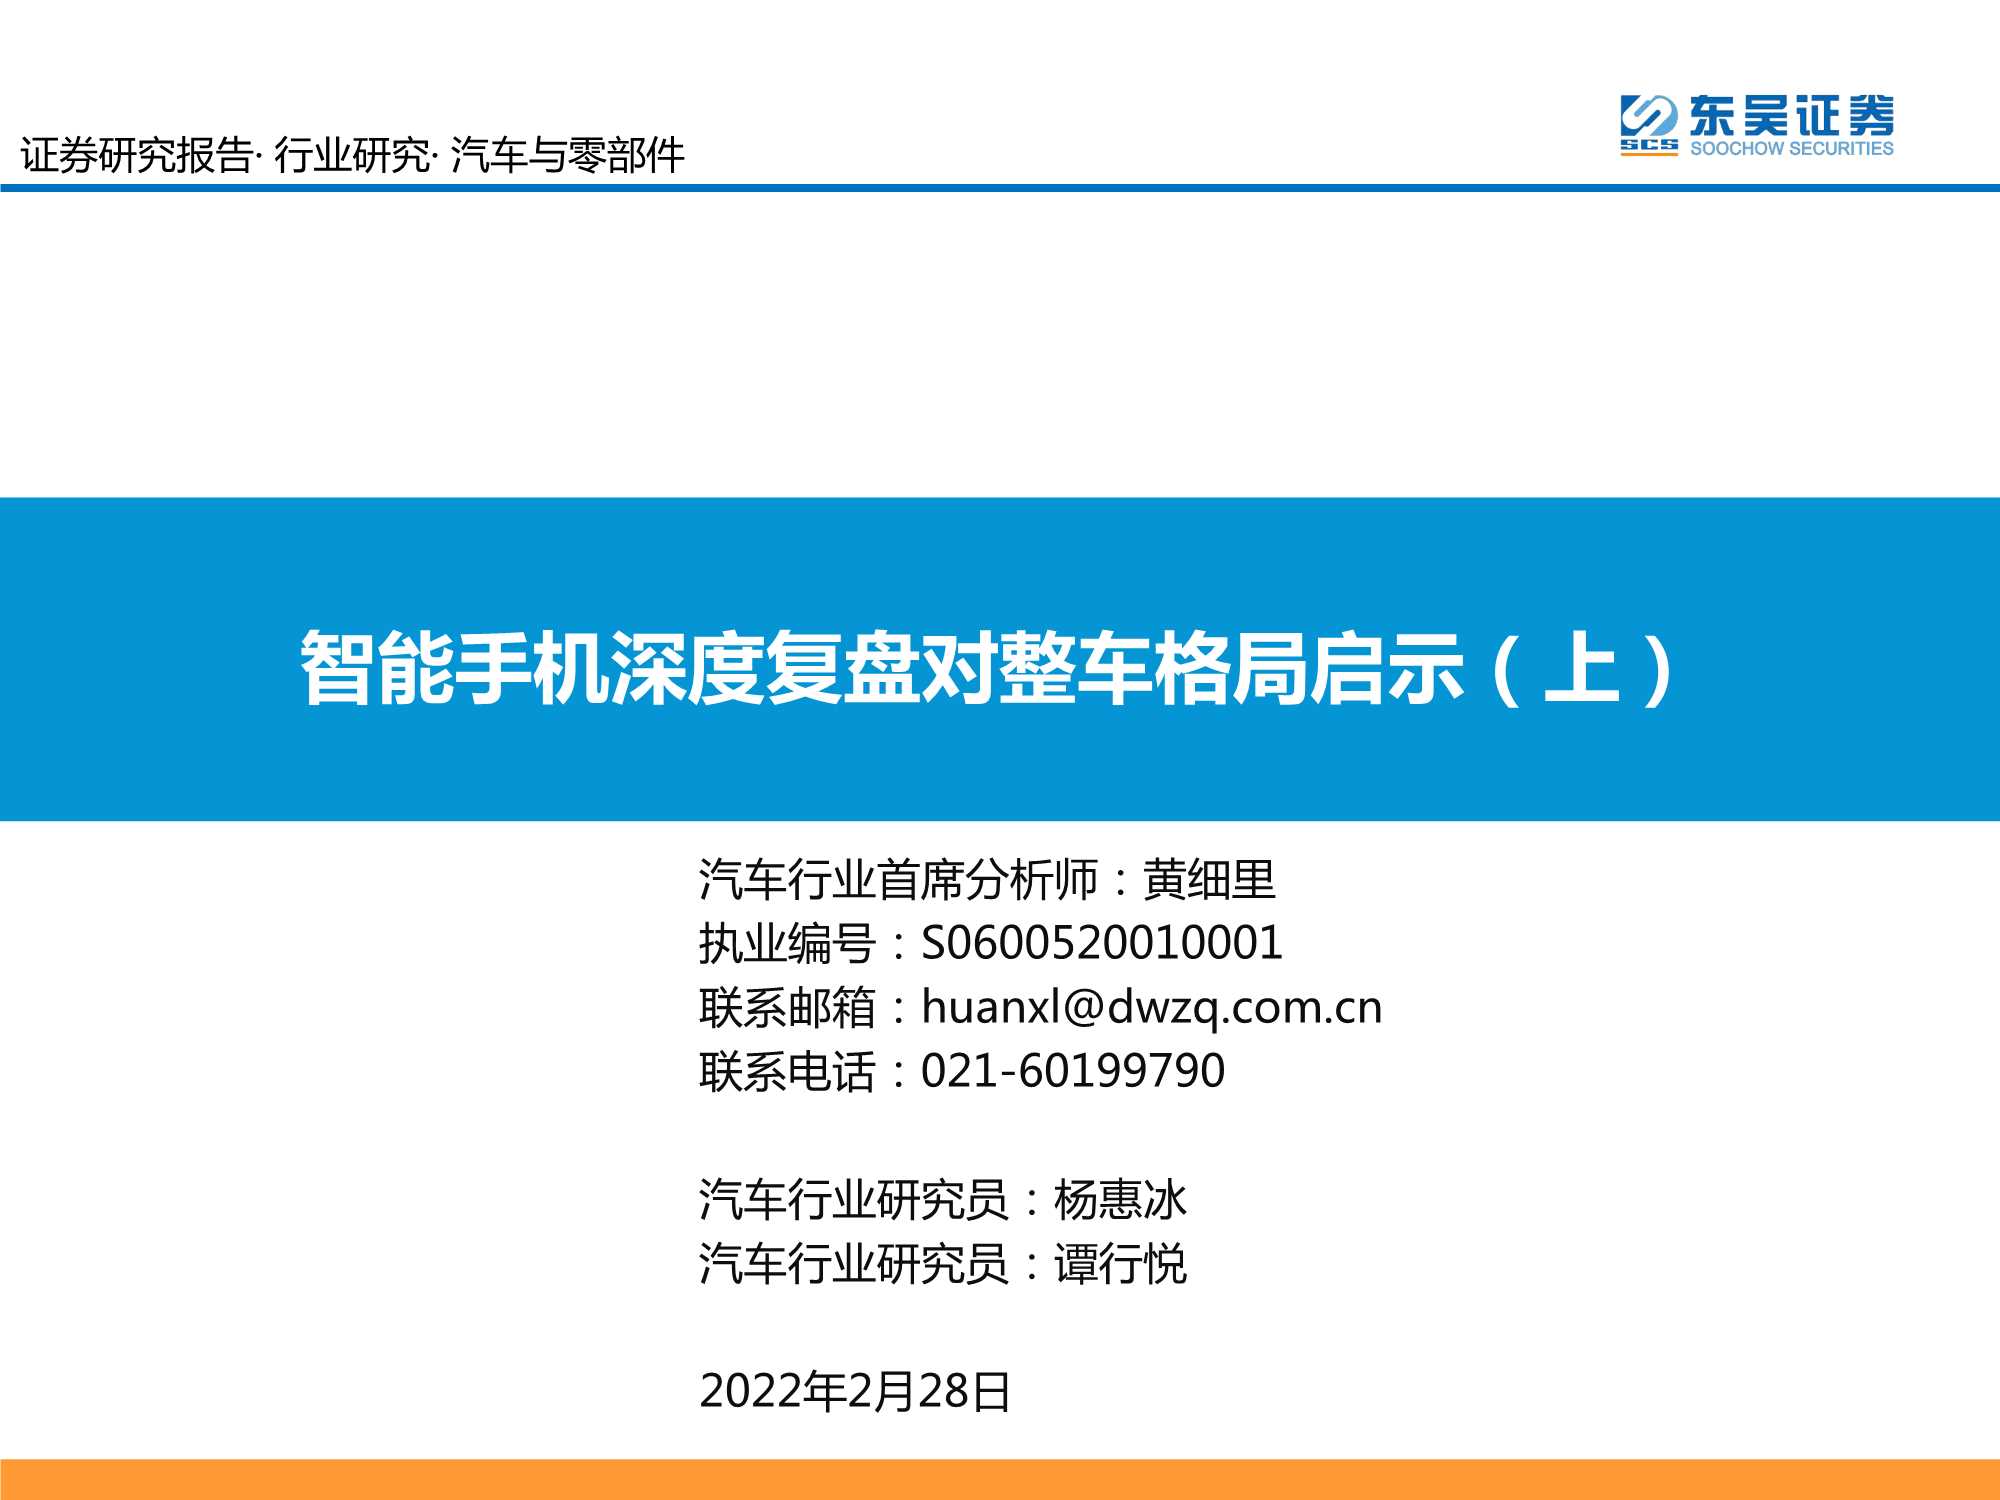 东吴证券-汽车与零部件行业：智能手机深度复盘对整车格局启示（上）-20220228-73页